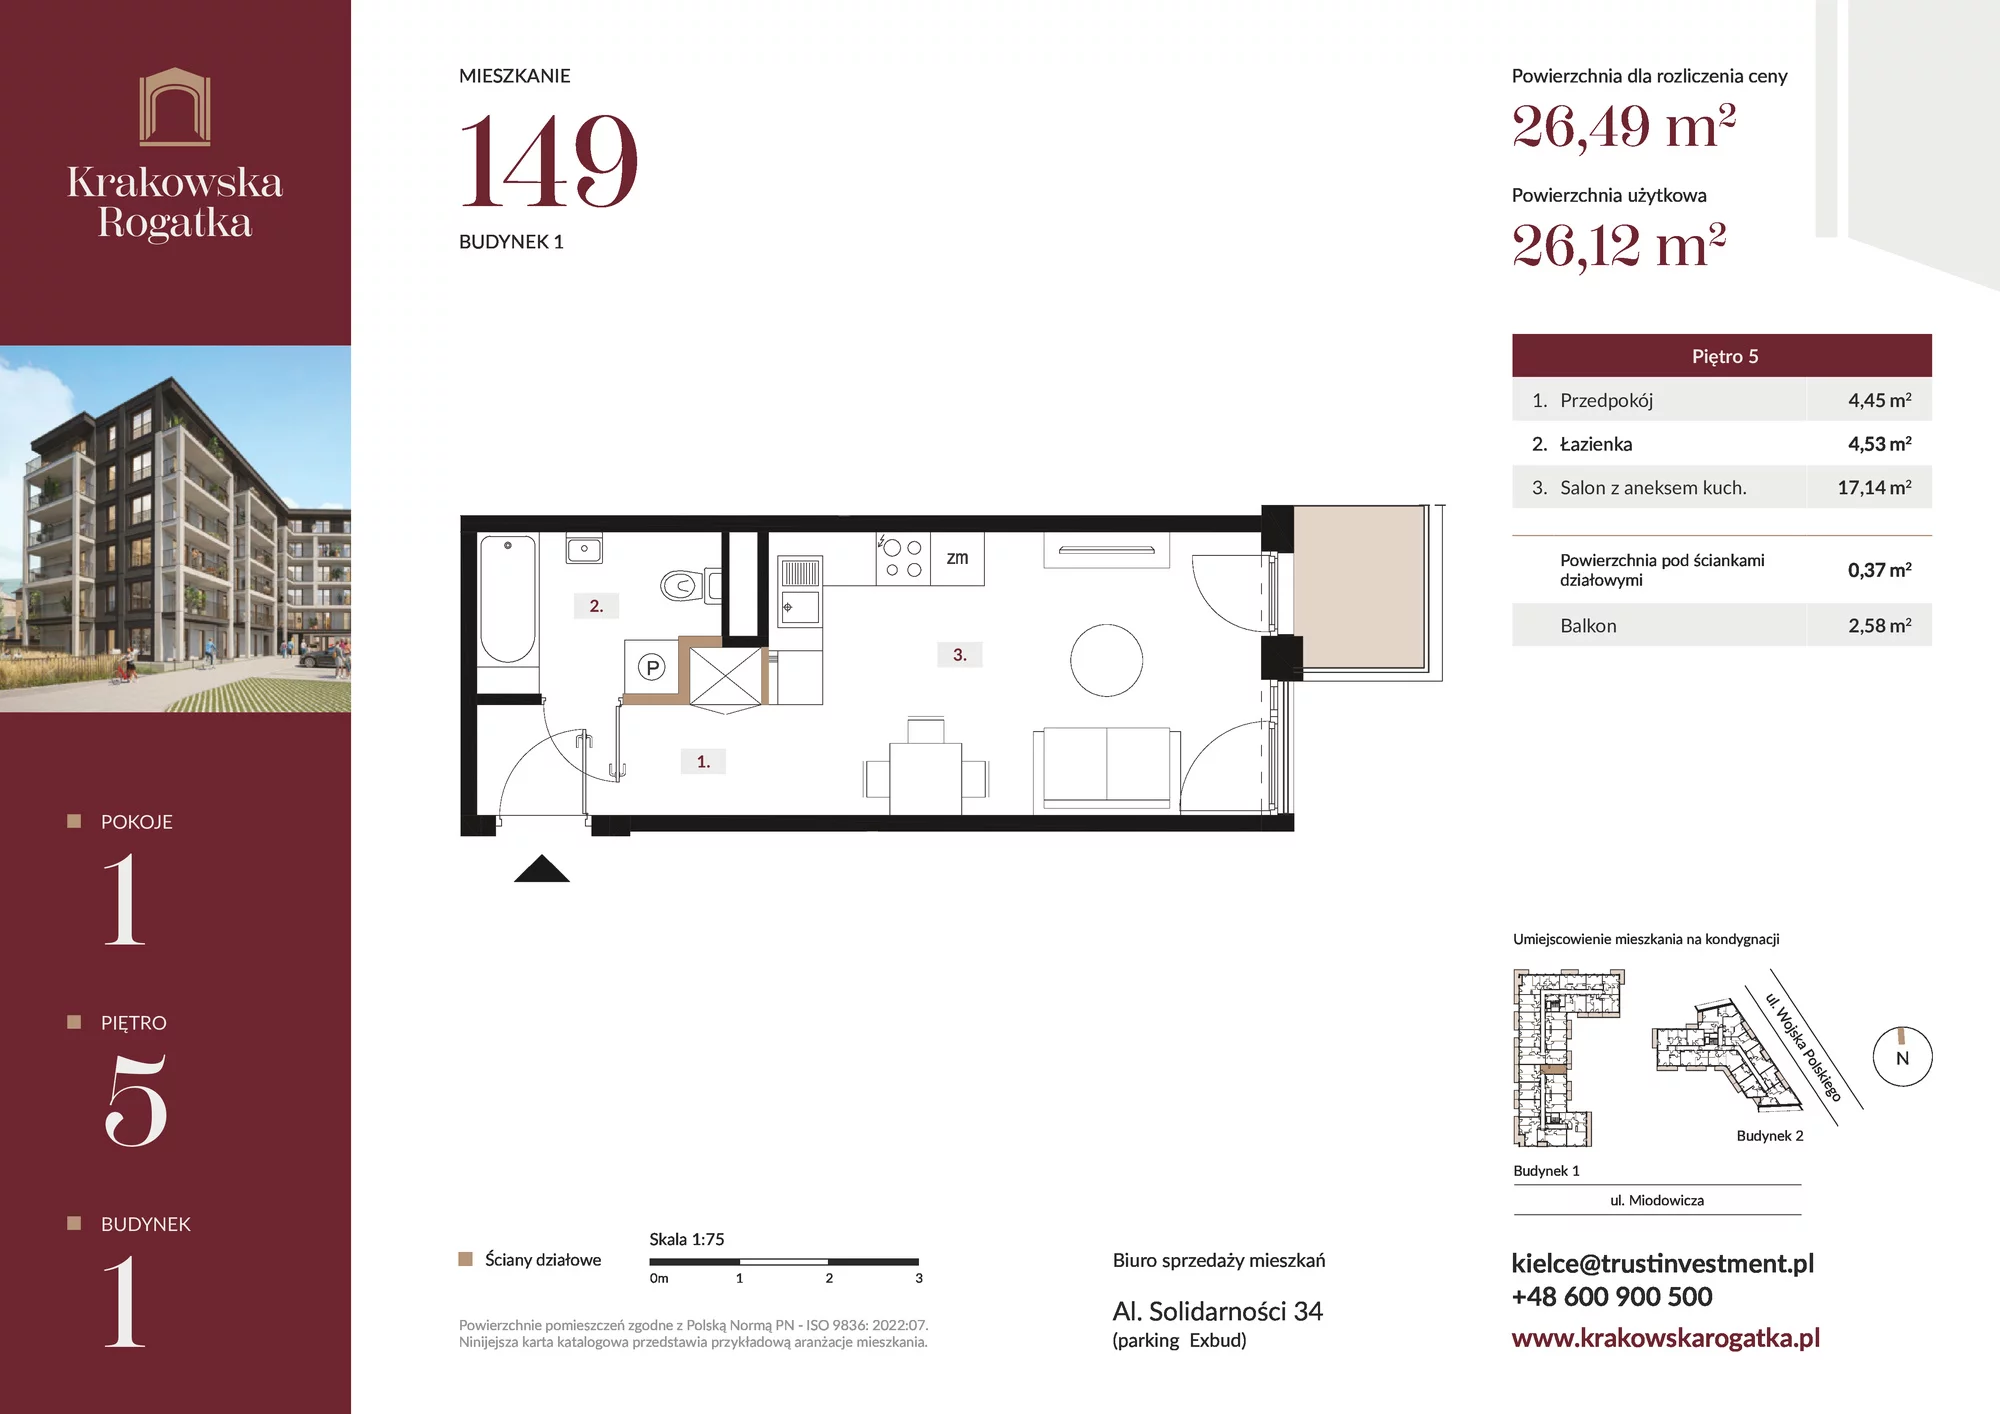 Mieszkanie 26,49 m², piętro 5, oferta nr Budynek 1 Mieszkanie 149, Krakowska Rogatka, Kielce, ul. Miodowicza 1